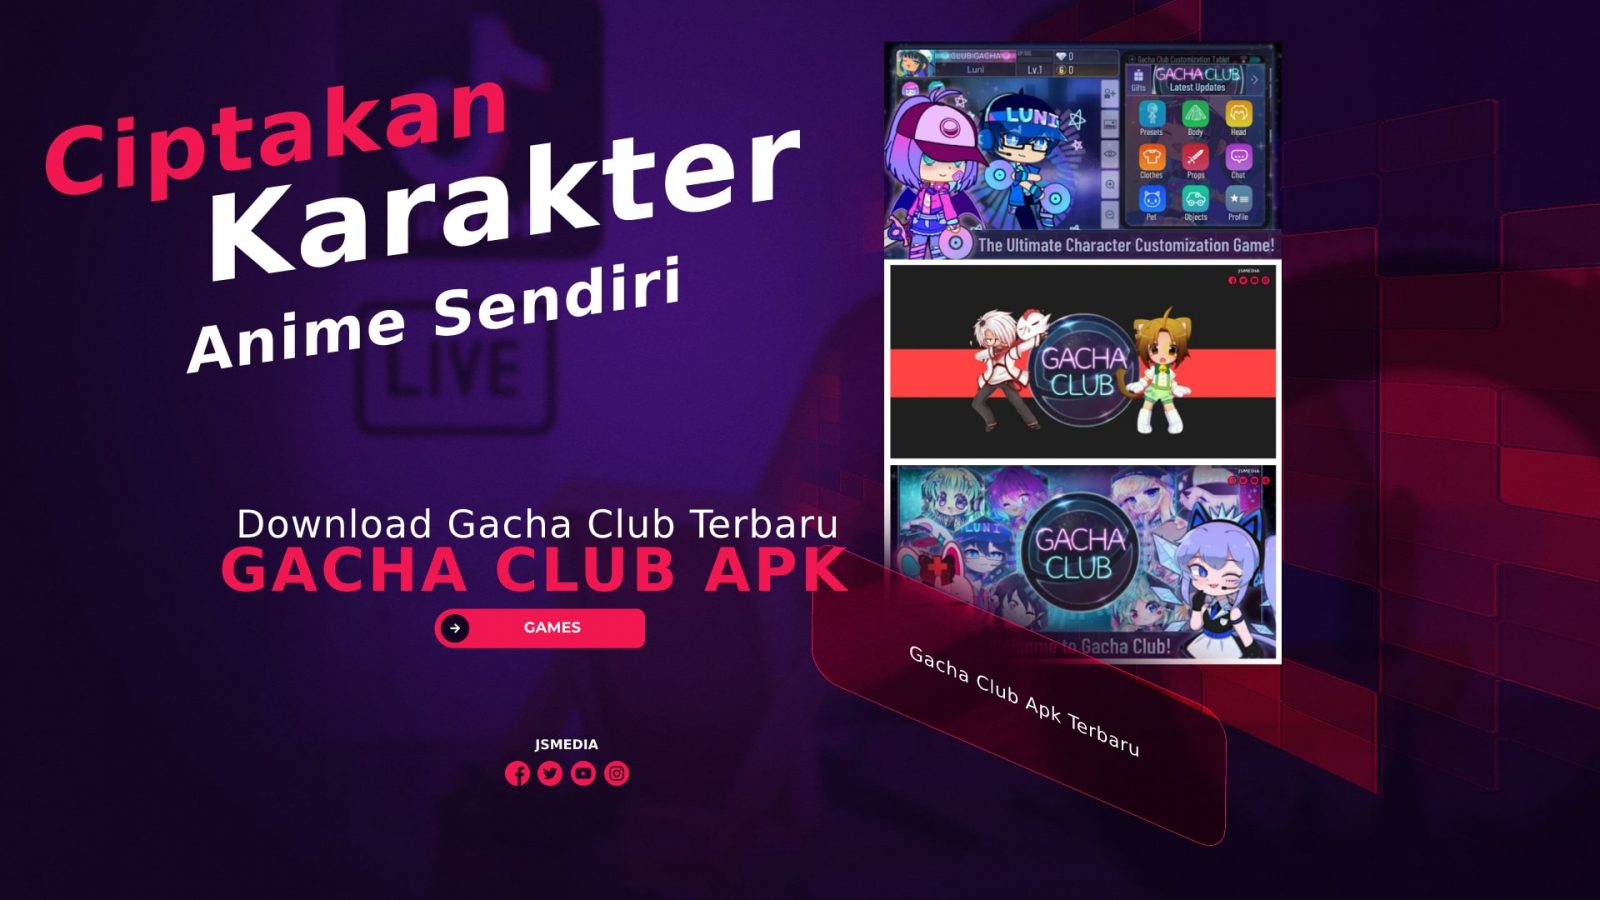 Download Gacha Club Apk Terbaru 2022, Ciptakan Karakter Anime Sendiri